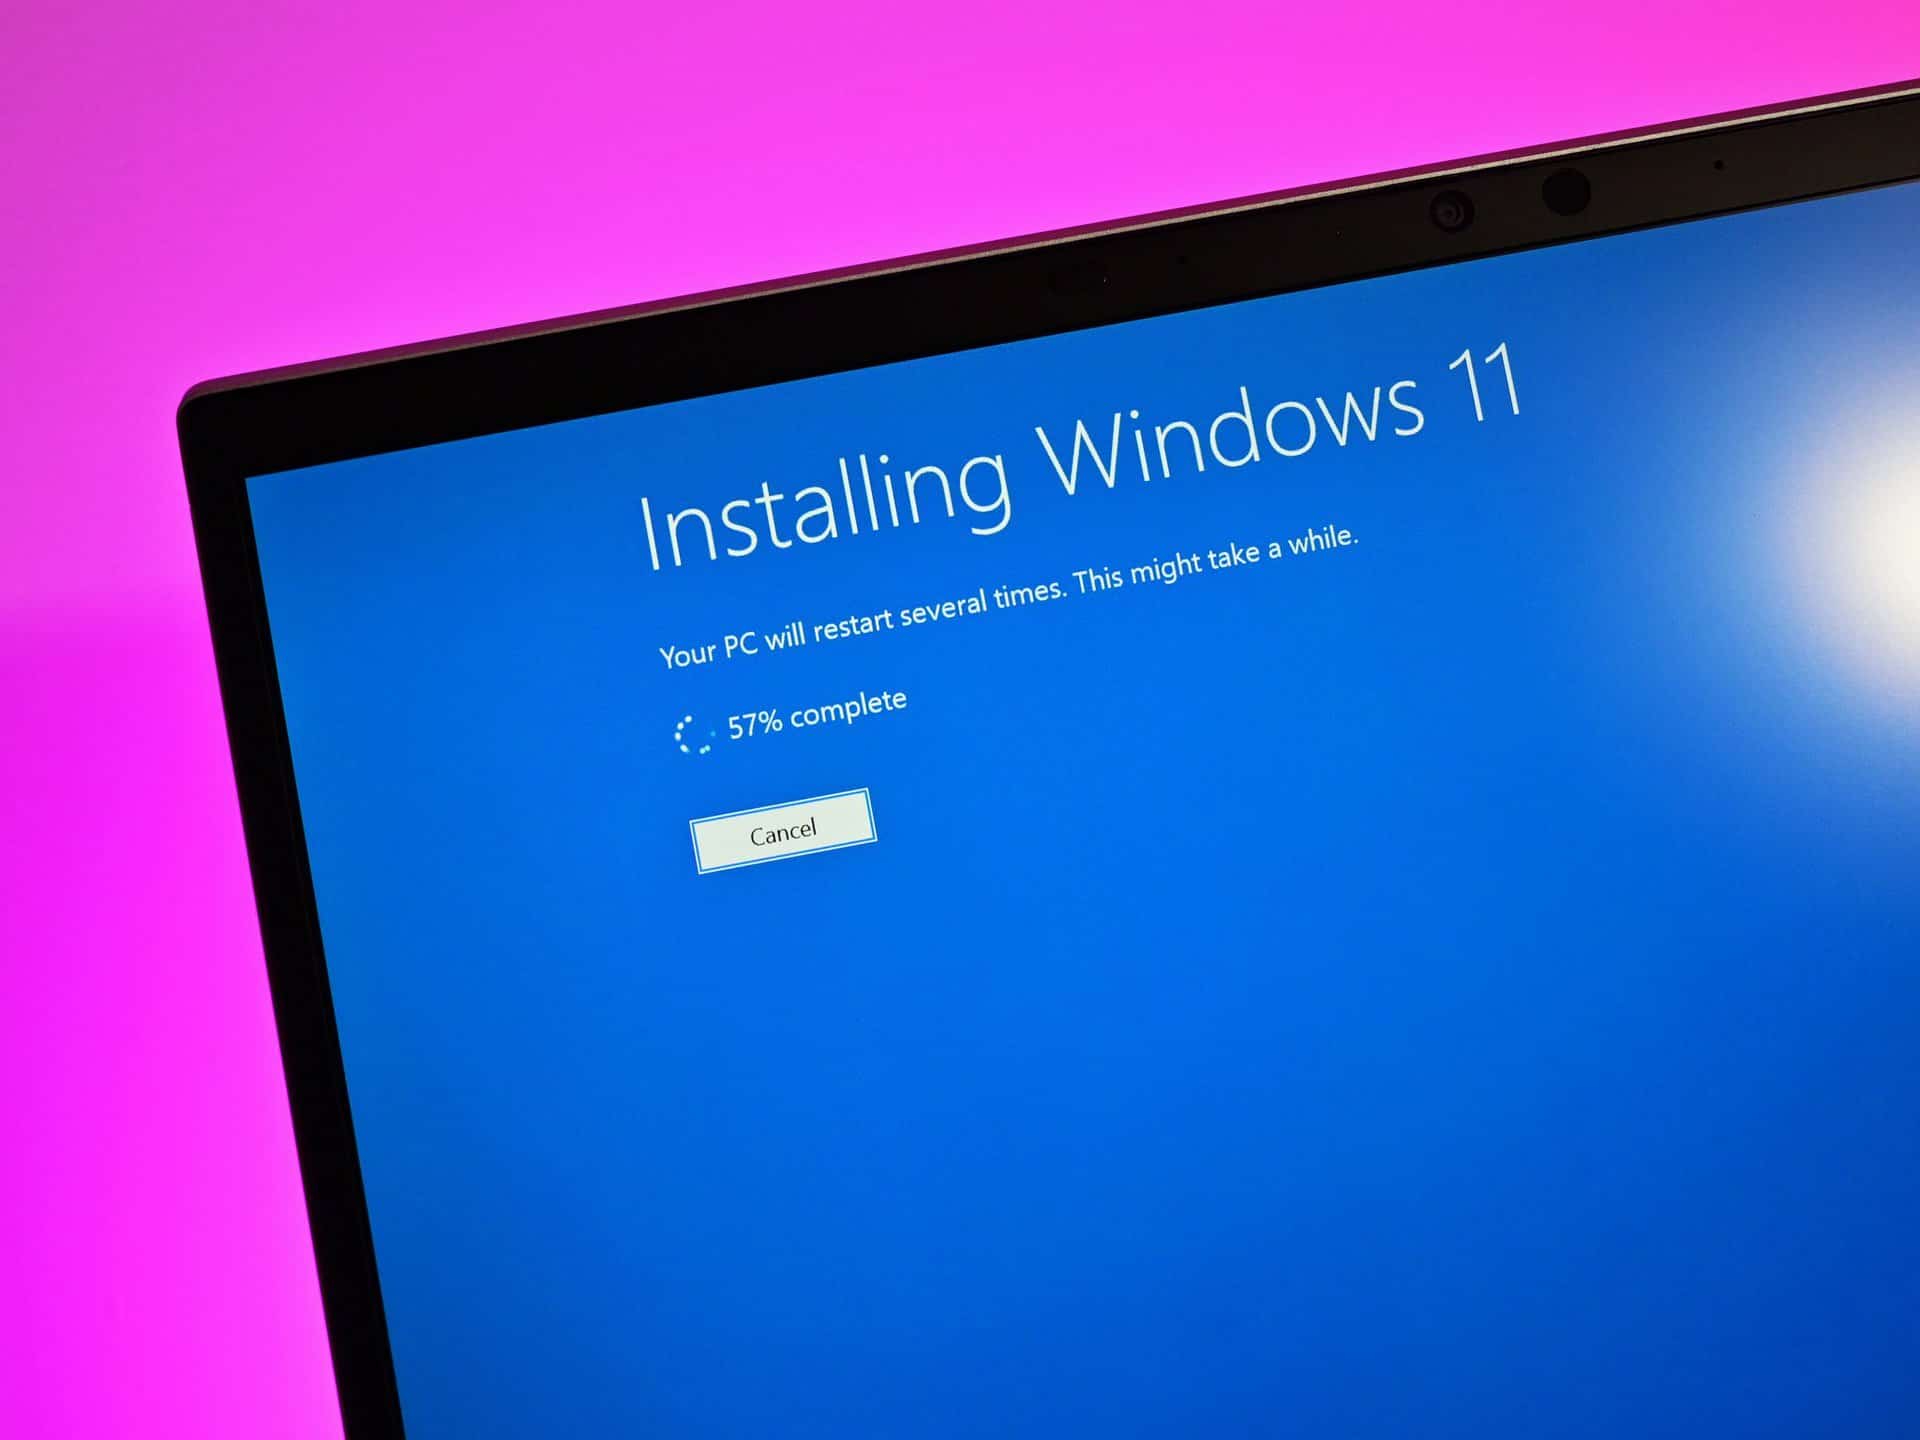 COMO ATIVAR WINDOWS GRÁTIS E ORIGINAL DIRETO NA MICROSOFT - Windows 10 e 11  